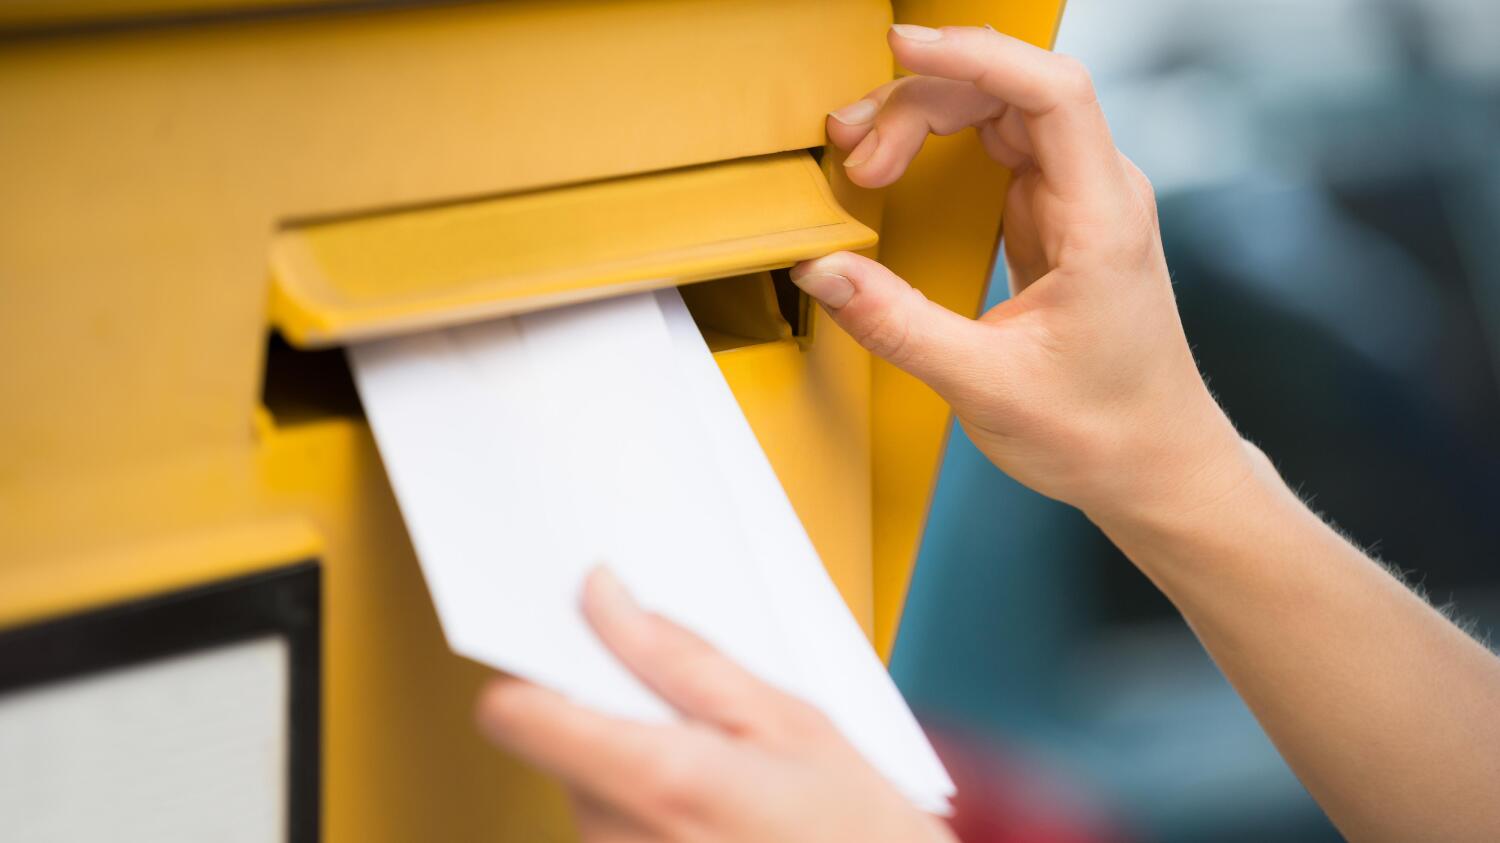 jos lähetetty kirje on liian painava postimerkkien määrään nähden, meneekö se perille? posti vastaa